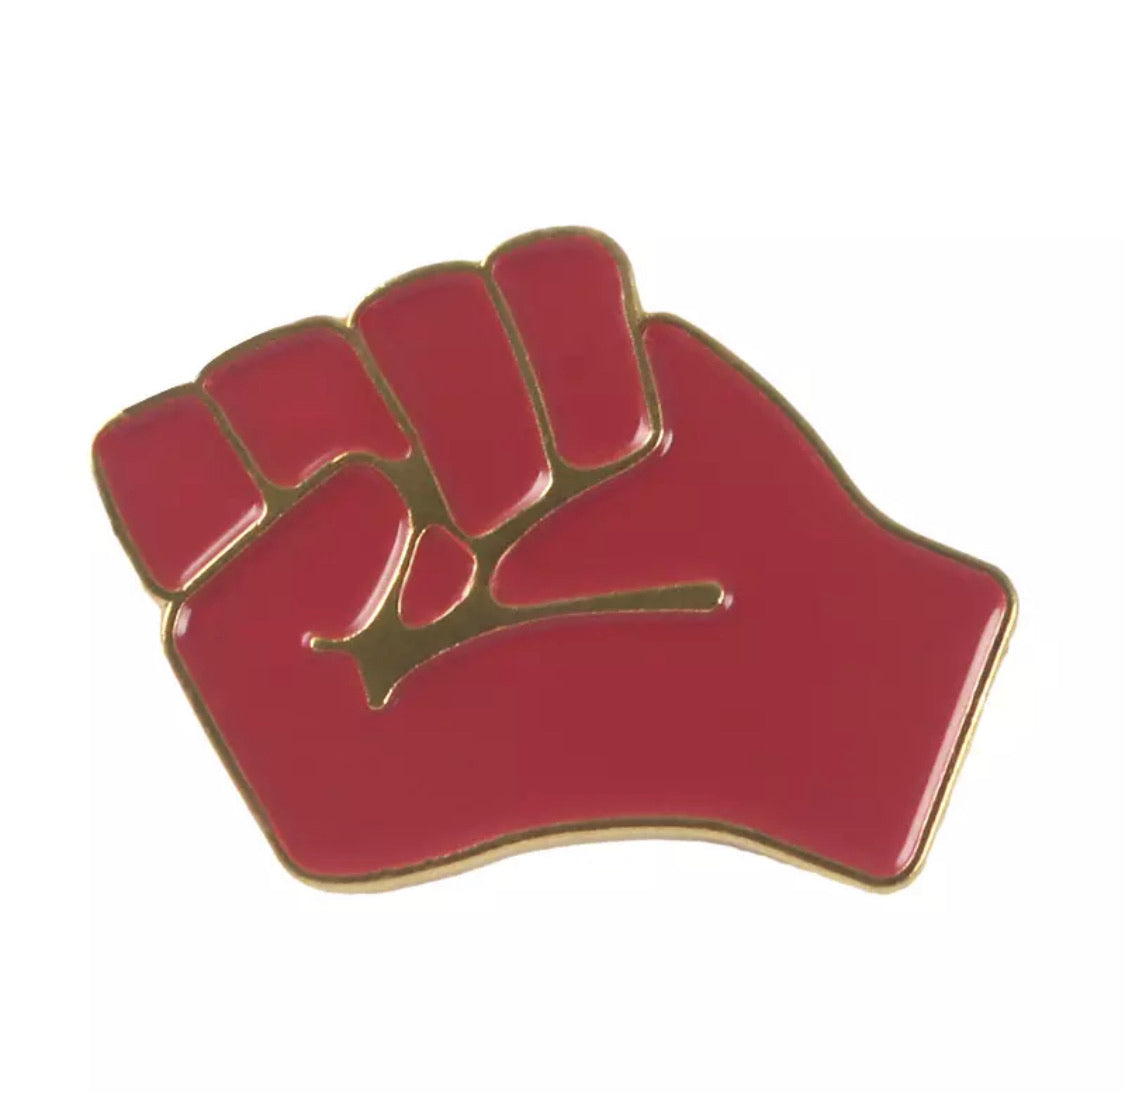 Raised Fist of Solidarity - unity Enamel pin brooch